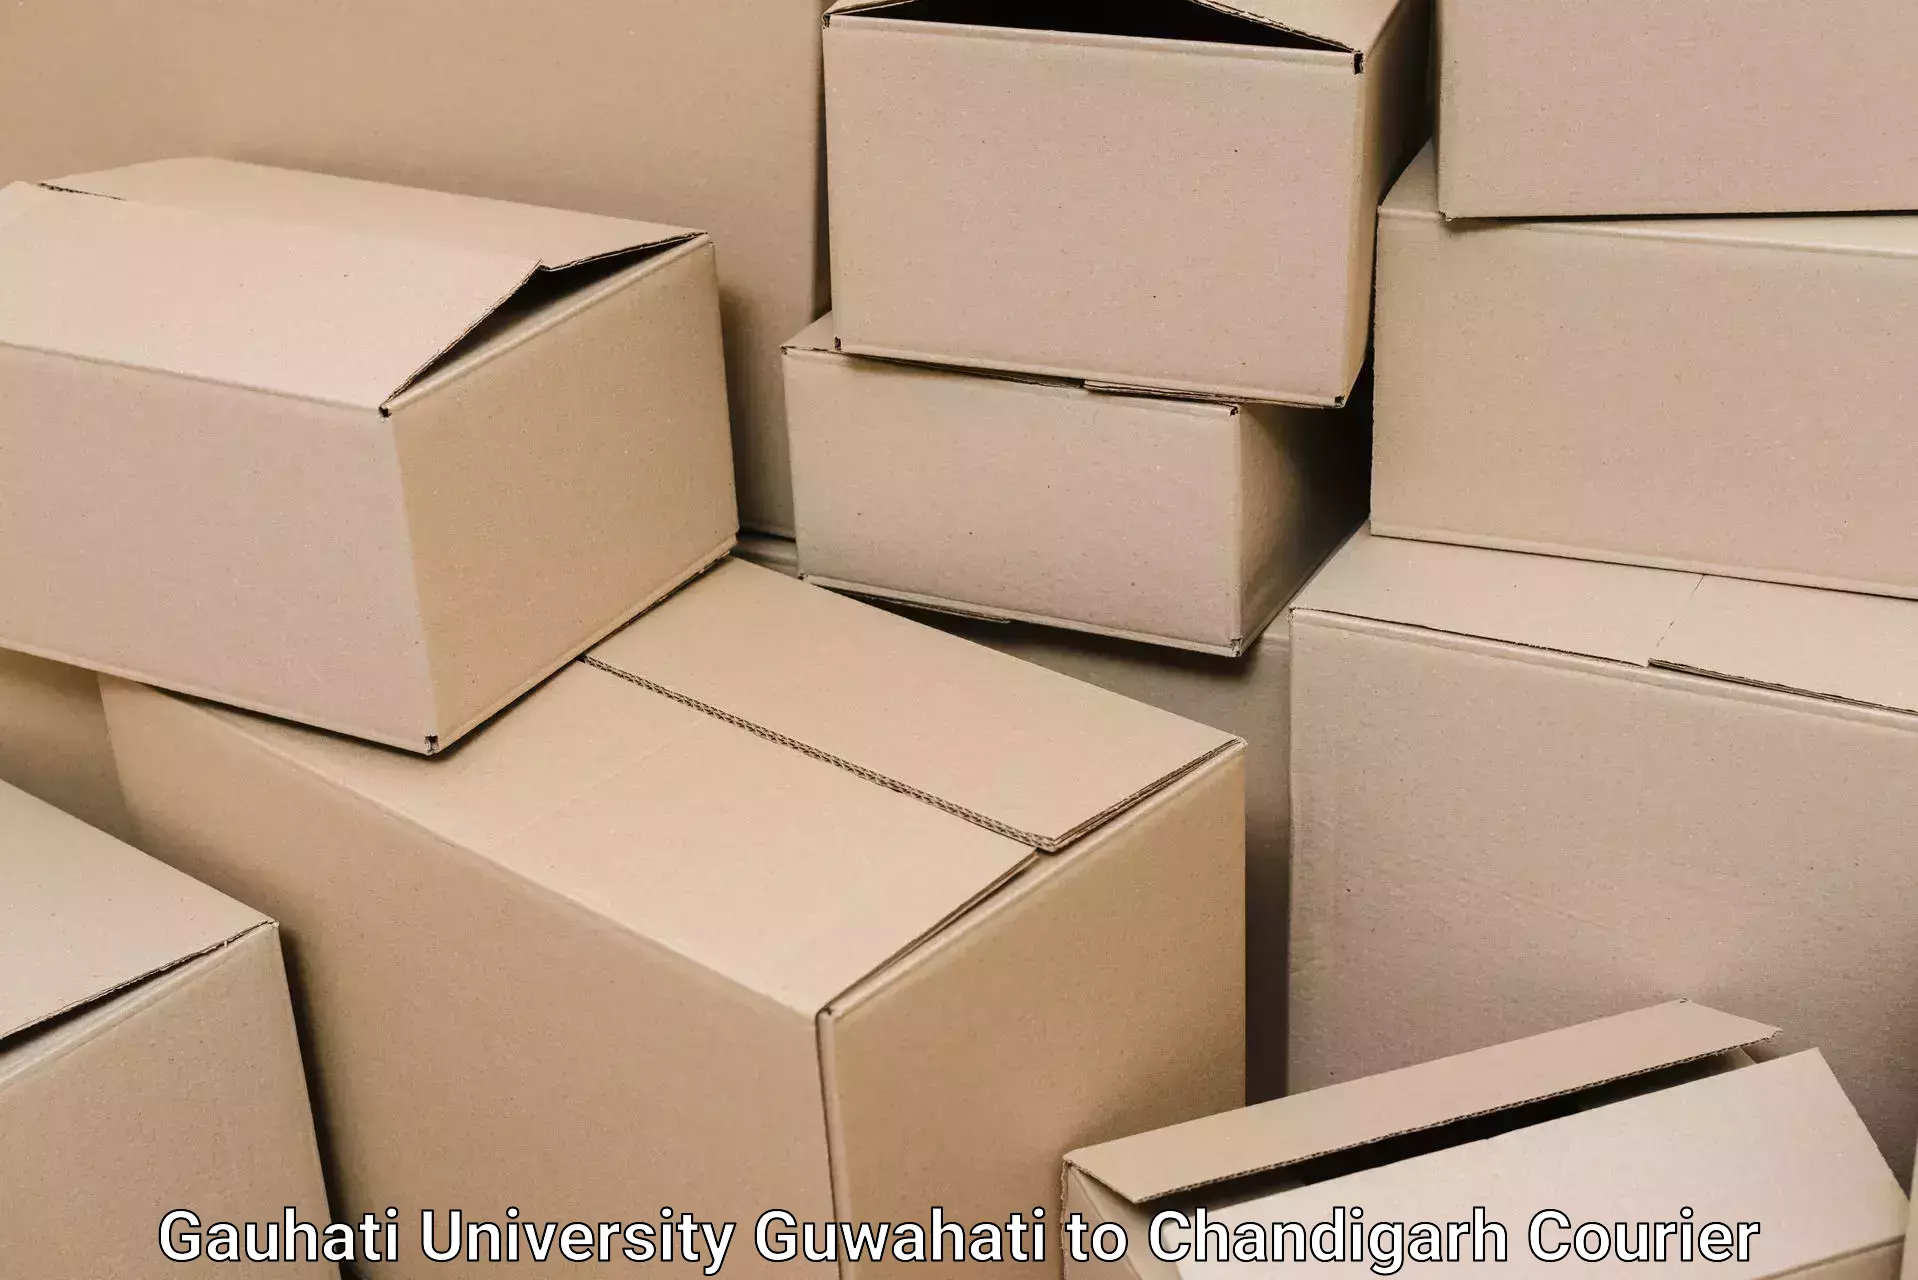 Household moving and storage Gauhati University Guwahati to Chandigarh